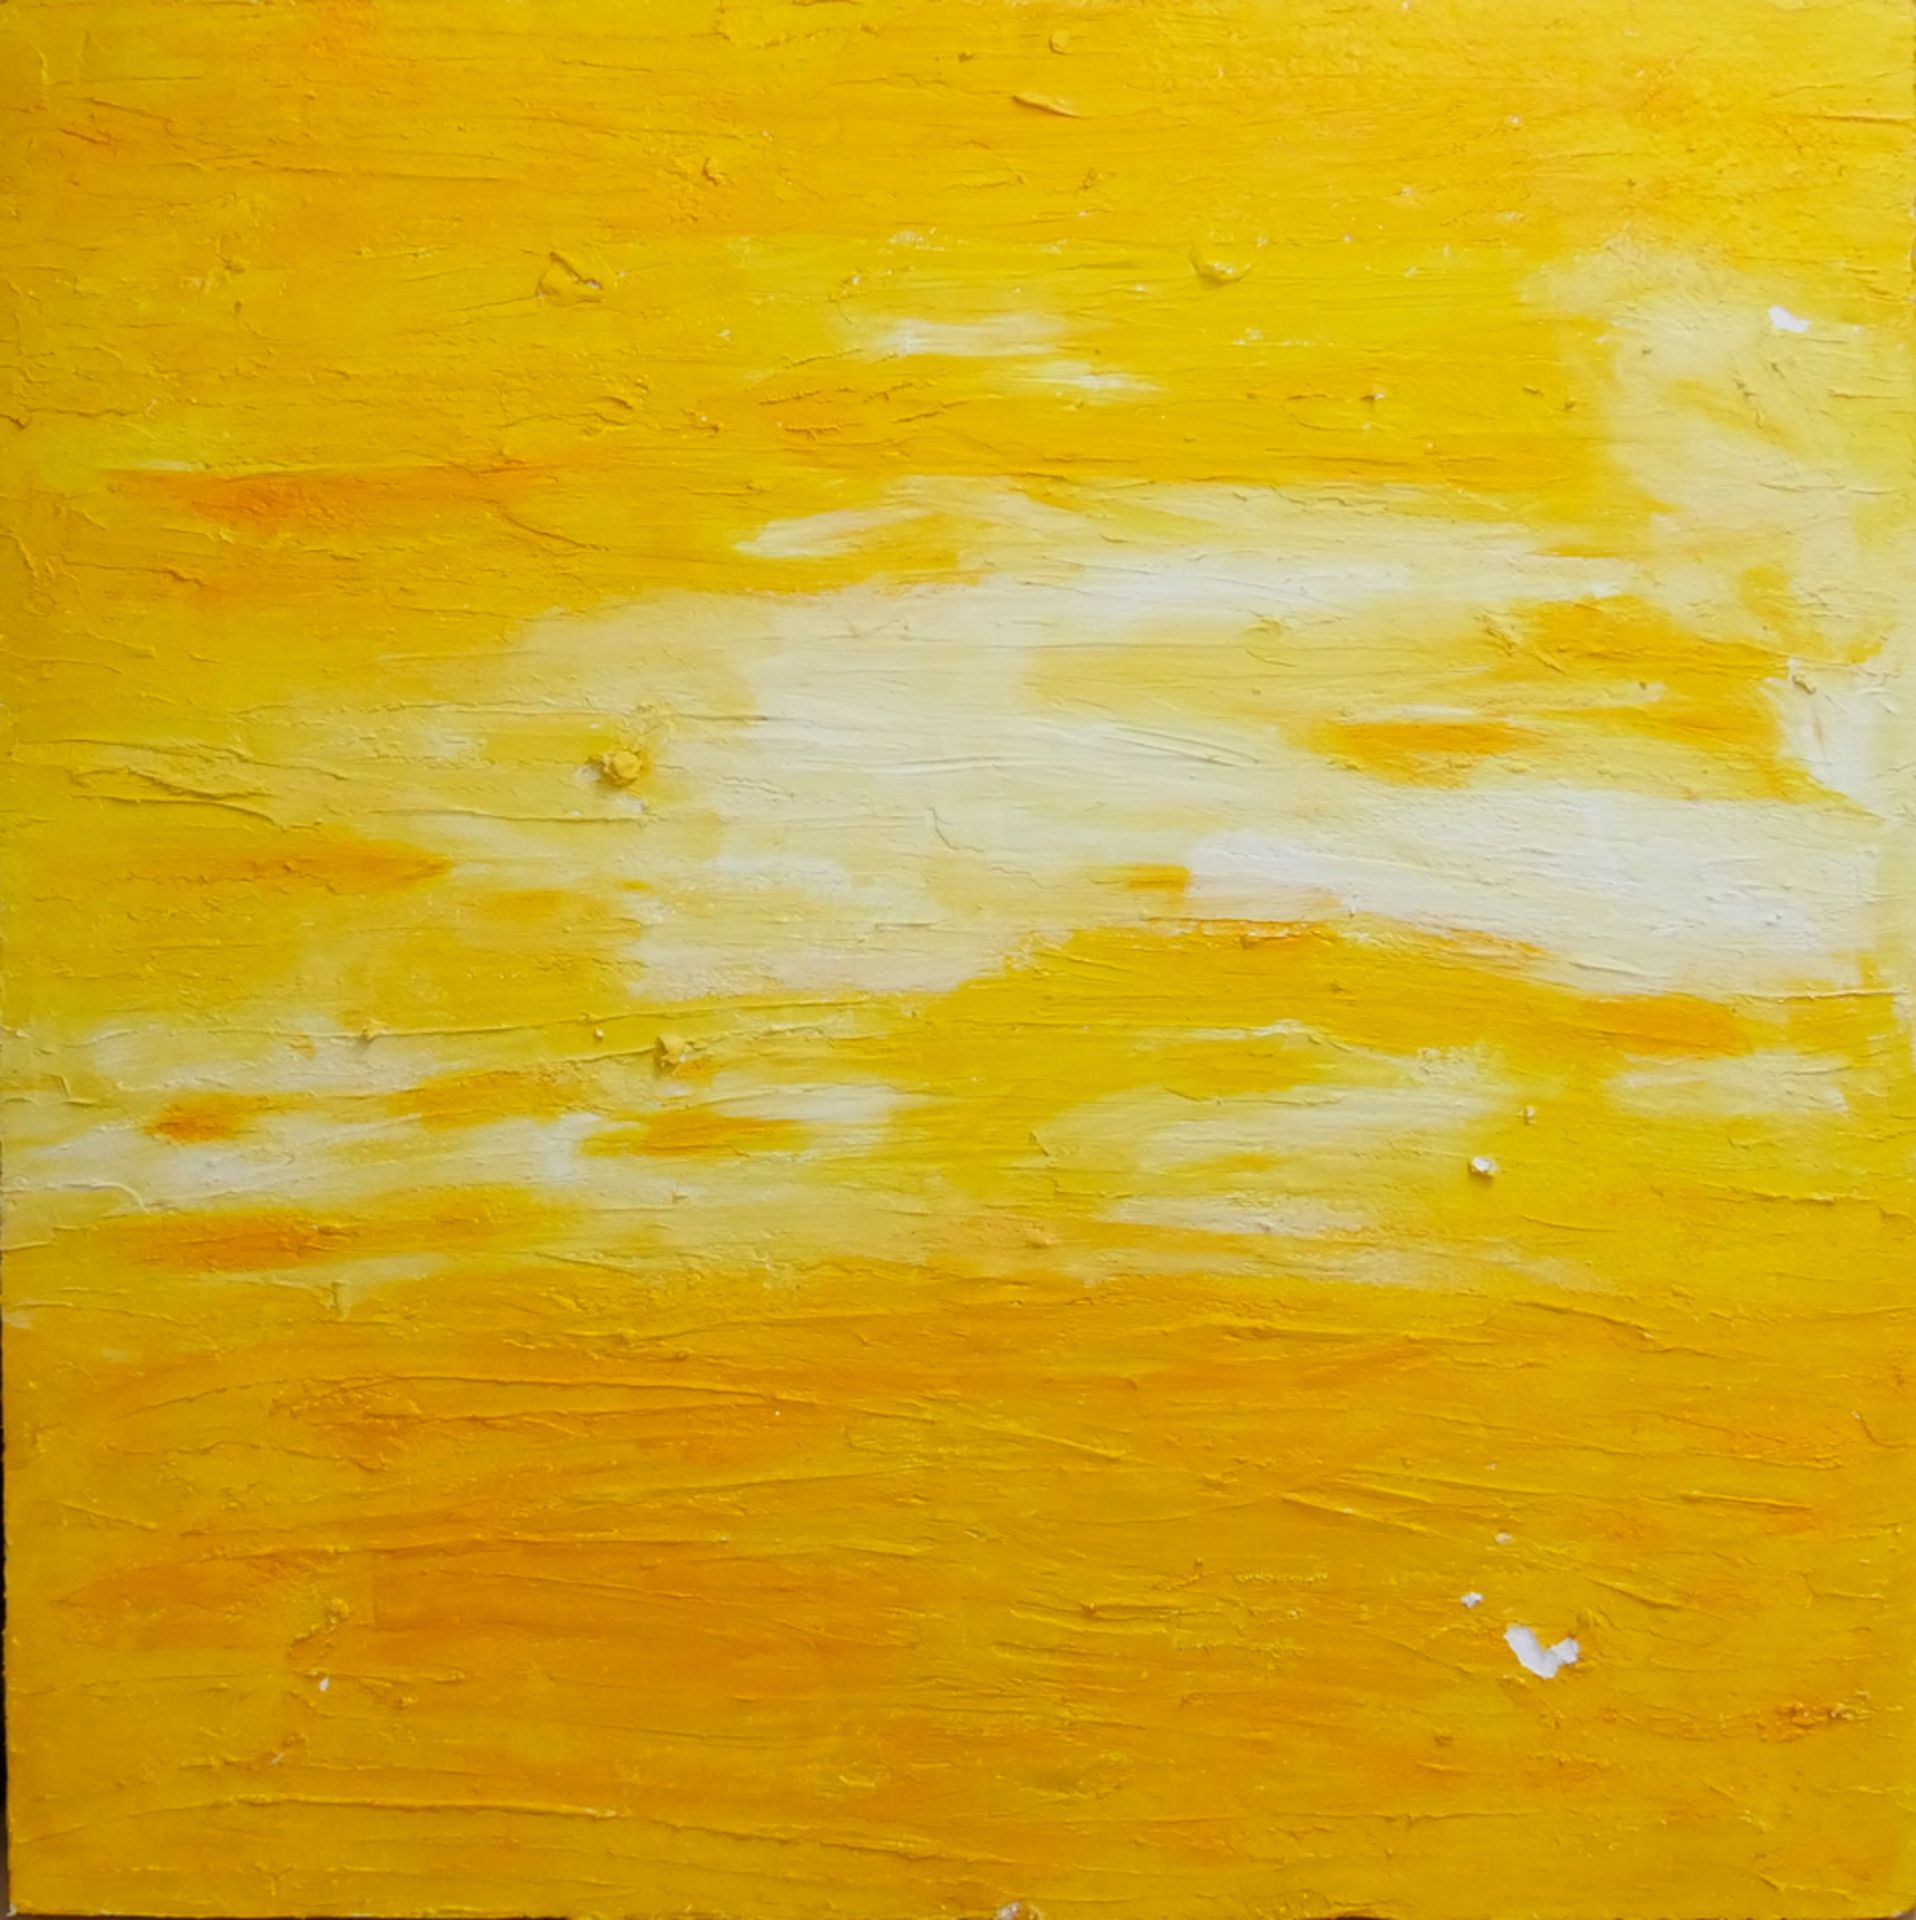 abstrakte Malerei in Gelb, ohne Signatur, Spachtel-Technik auf wohl Styropor-Platte, Maße: Breite